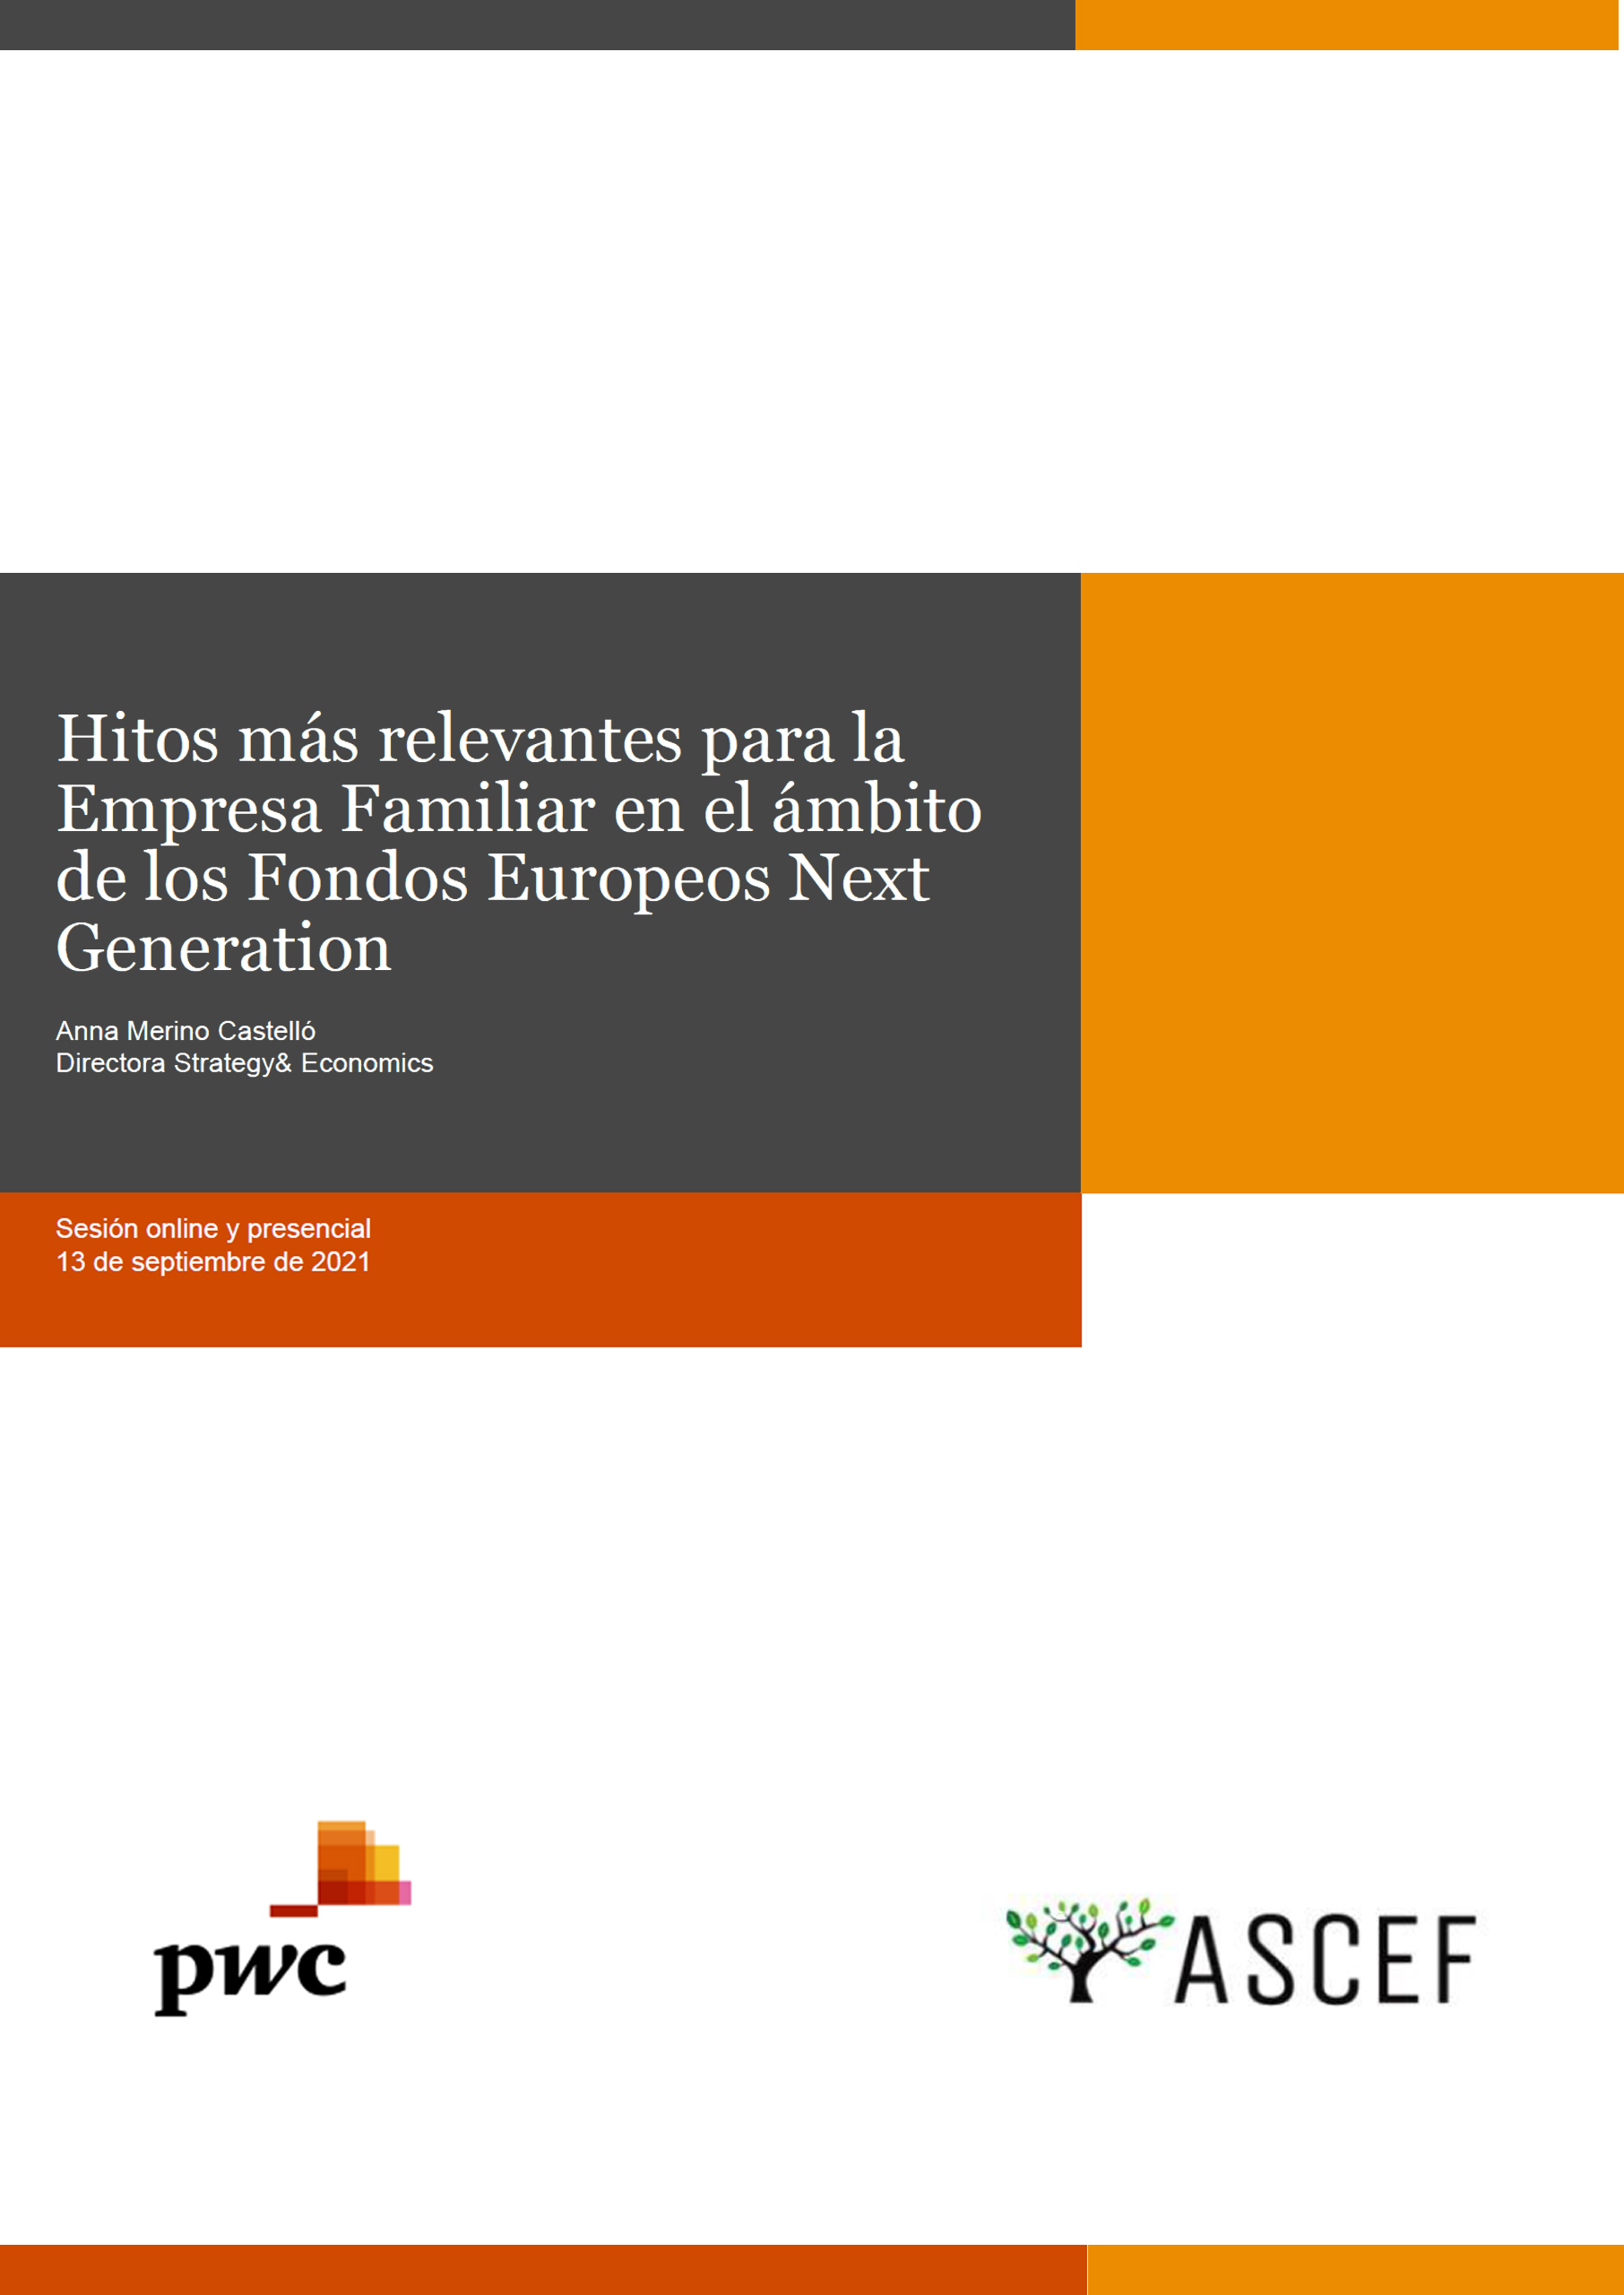 Hitos más relevantes para la Empresa Familiar en el ámbito de los Fondos Europeos Next Generation